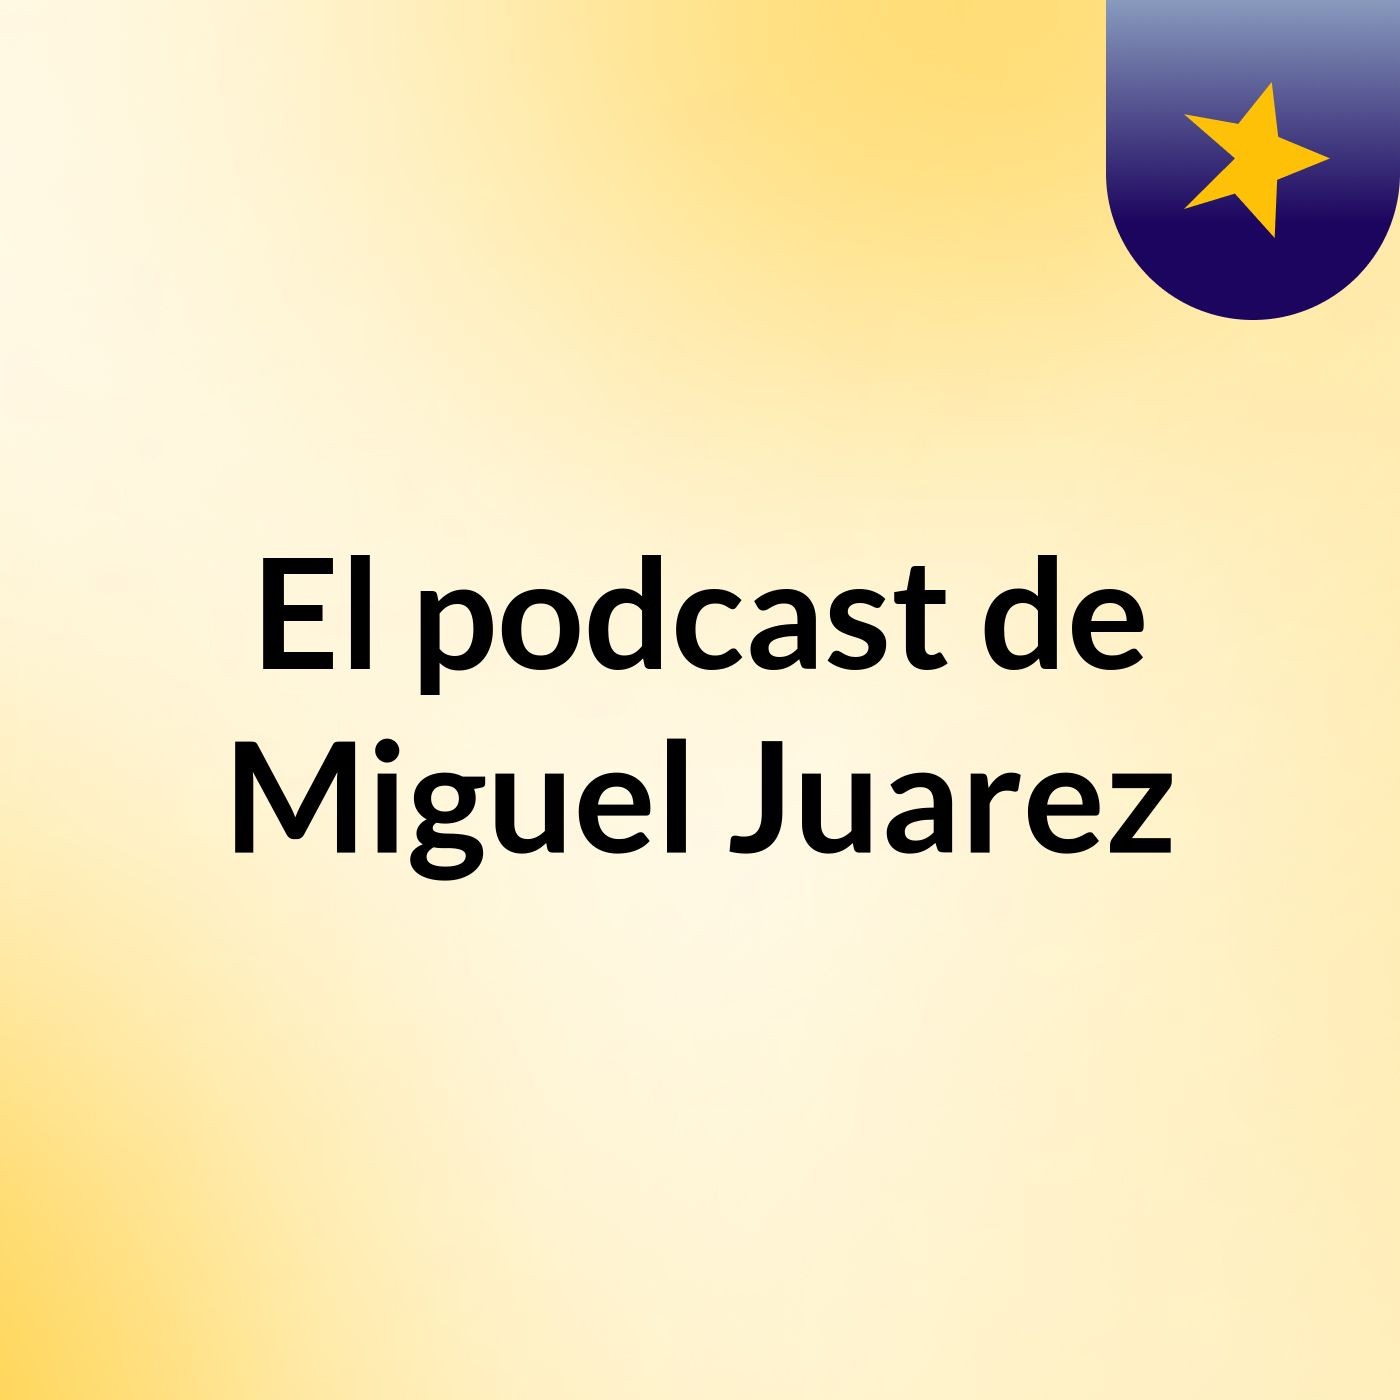 El podcast de Miguel Juarez